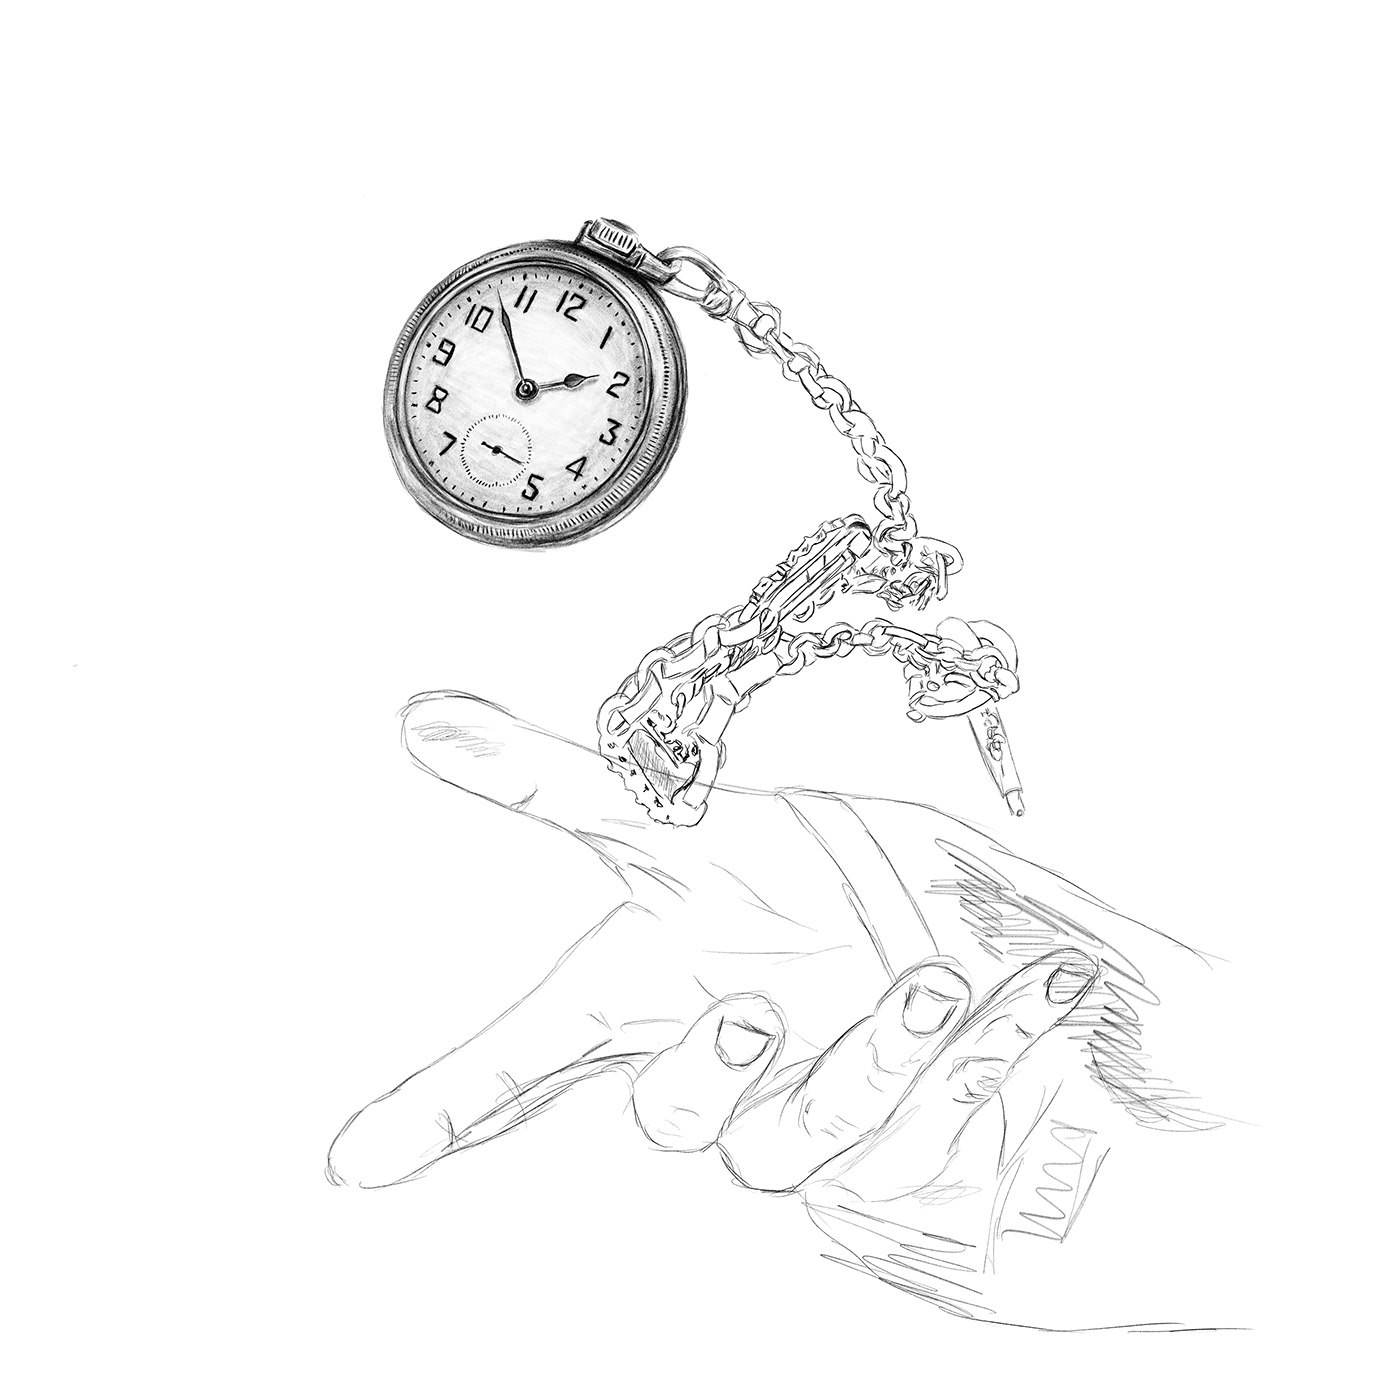 karakalem dijital çizim saat clock sketch artwork Drawing  Digital Art  clock drawing